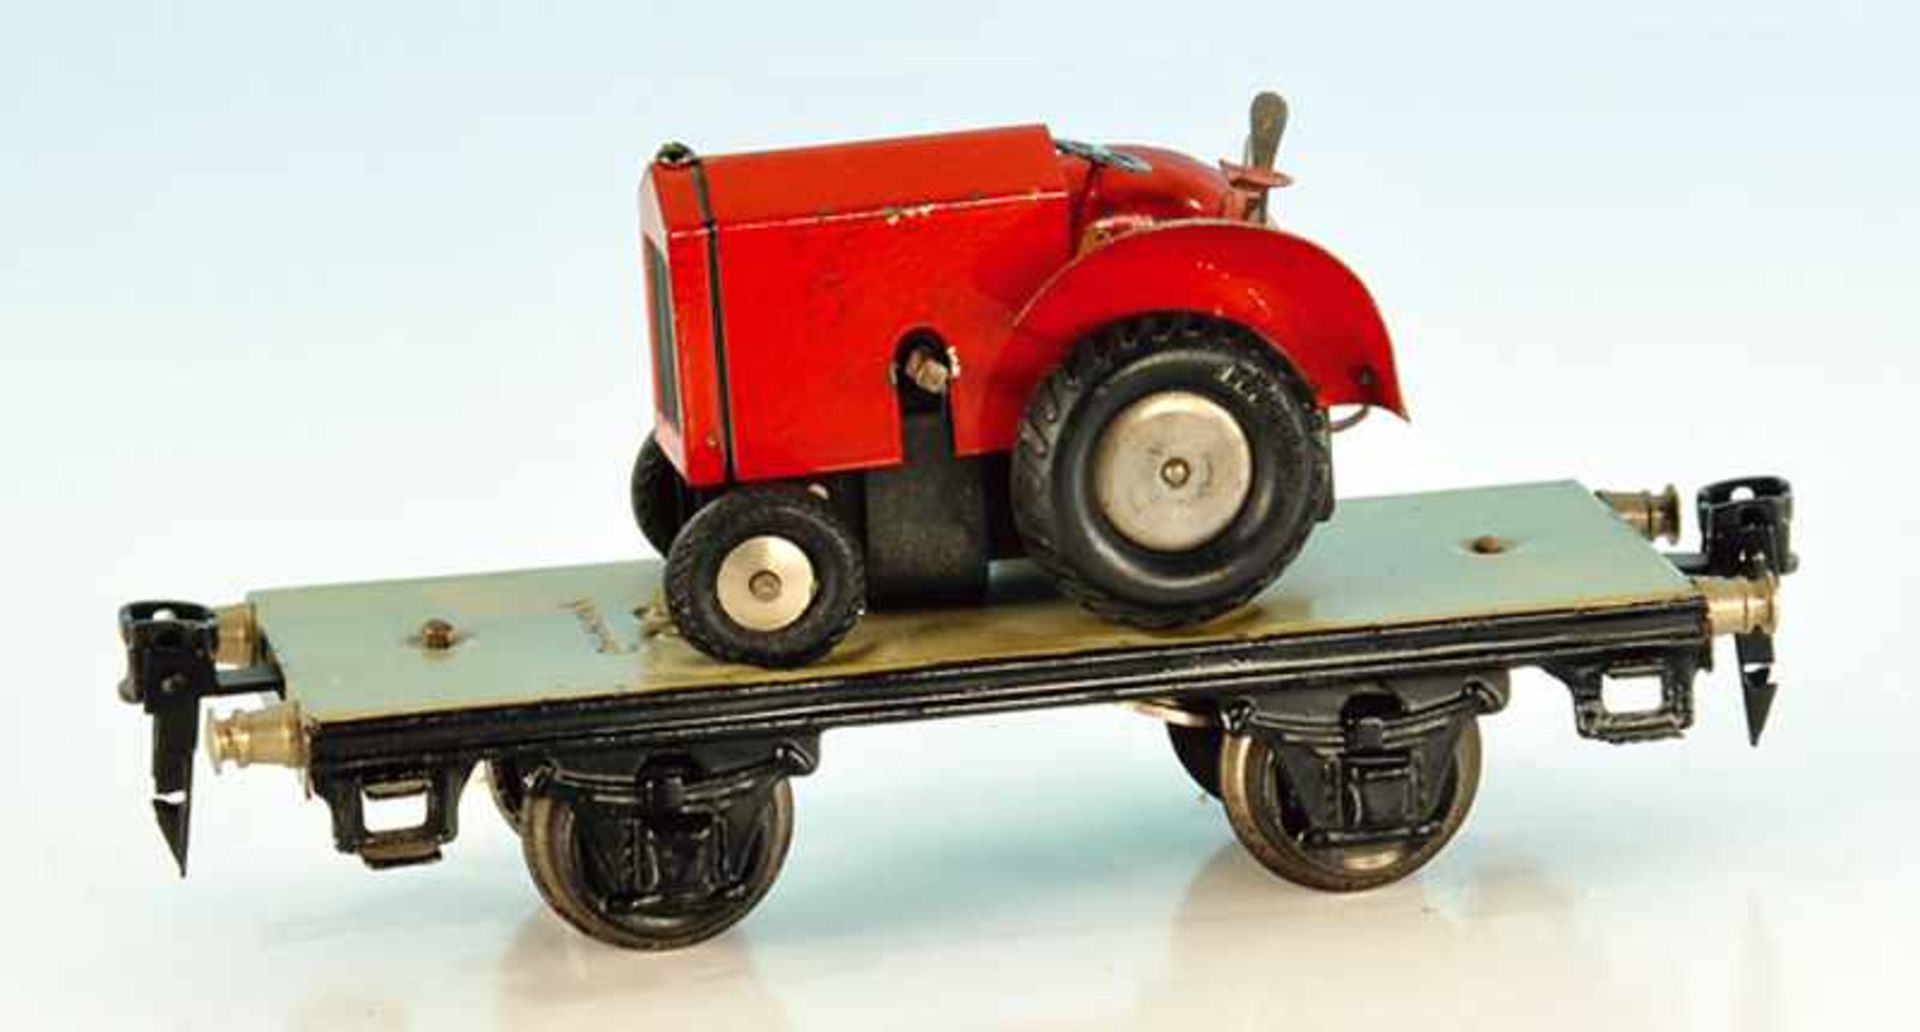 MÄRKLIN Traktorwagen 1707/0 16,5 cm, der Traktor mit kleinen Lackschäden, Unterwagen gut erhalten,